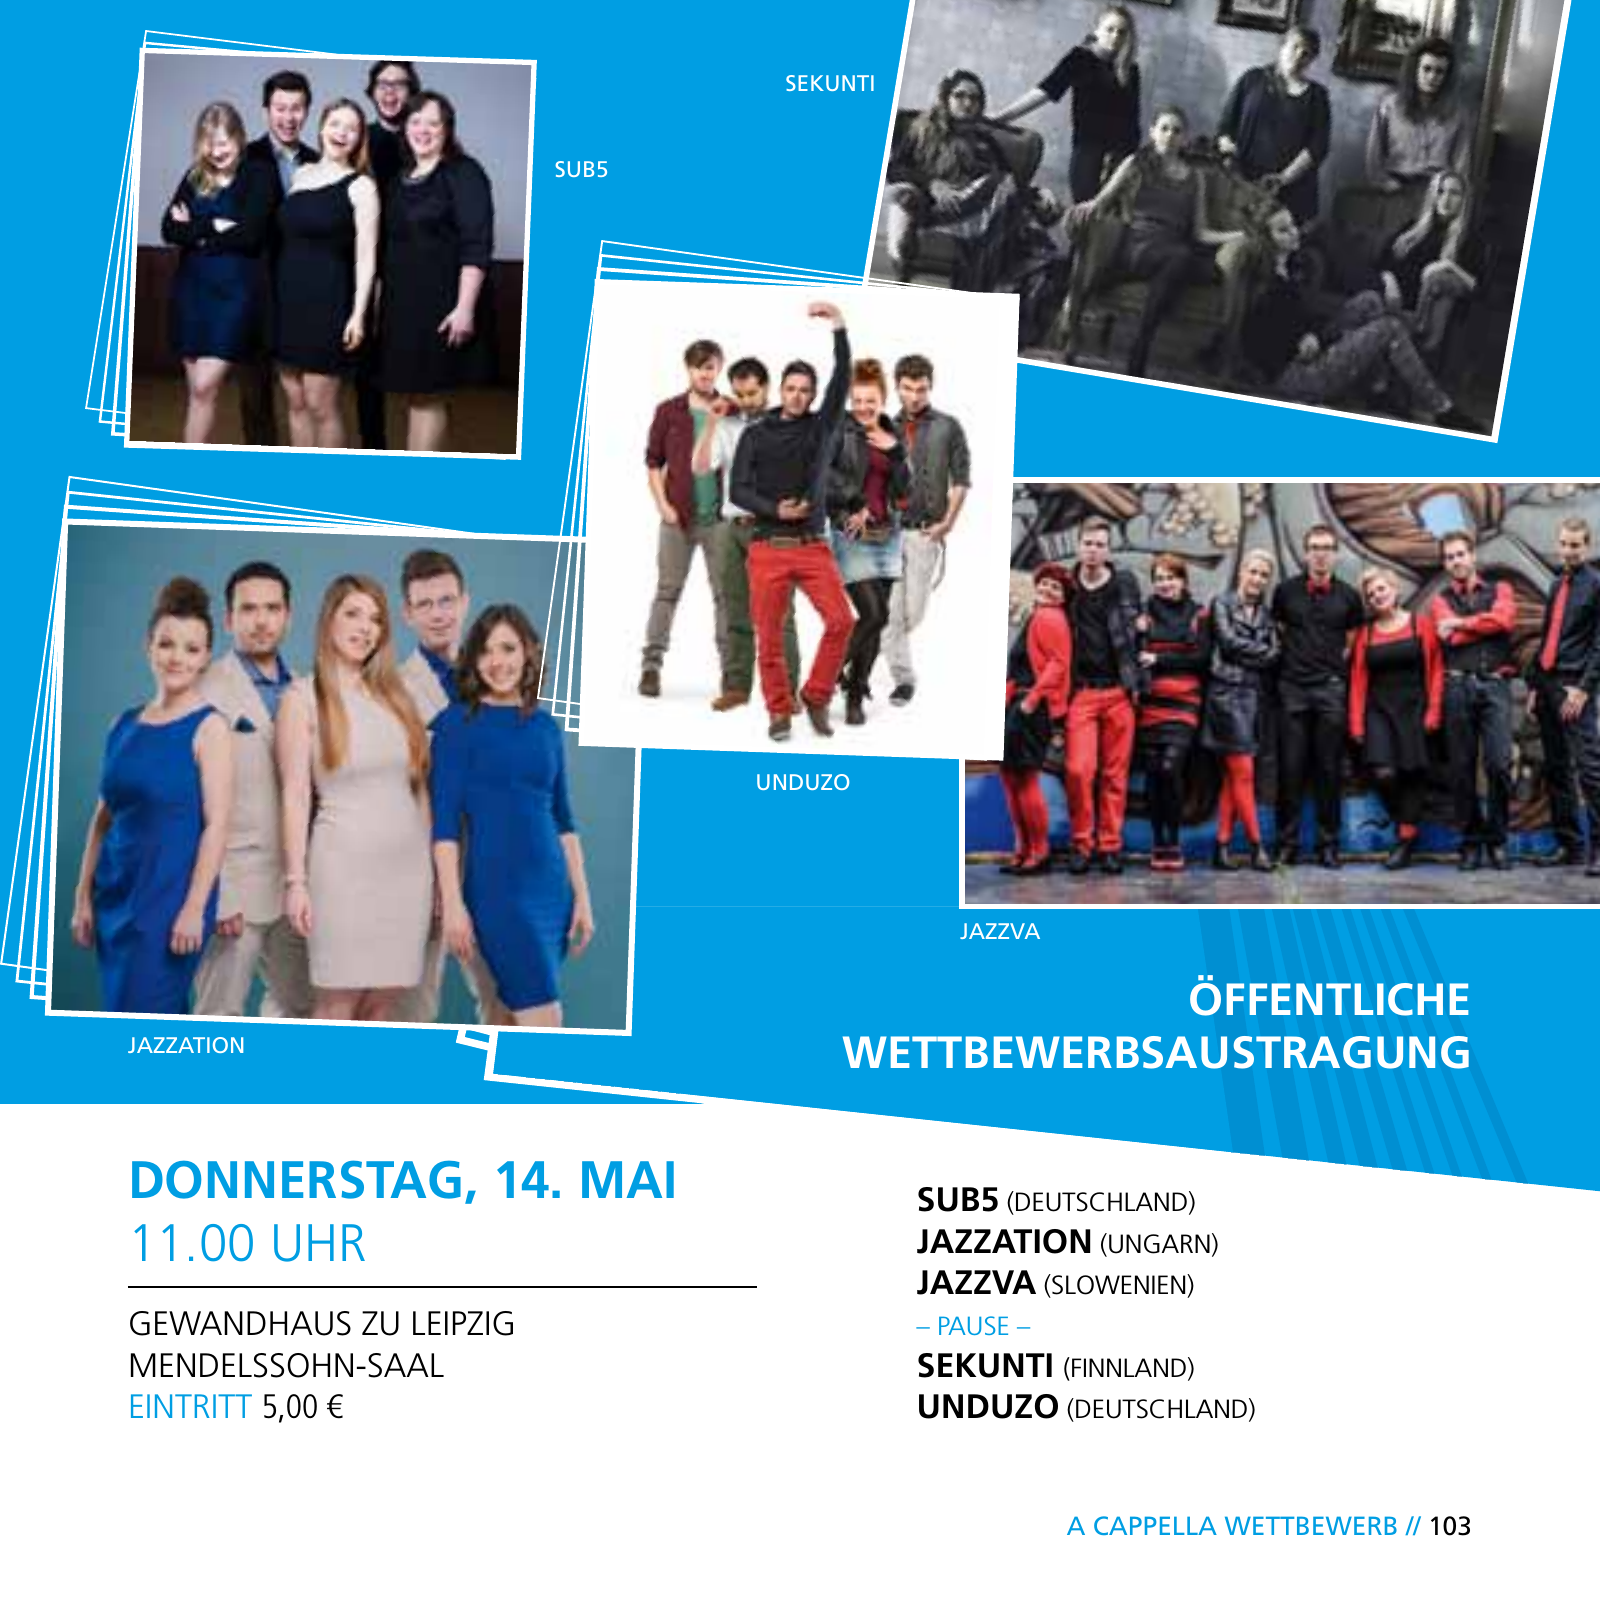 Vorschau E-Paper Festival a cappella 2015 Seite 105